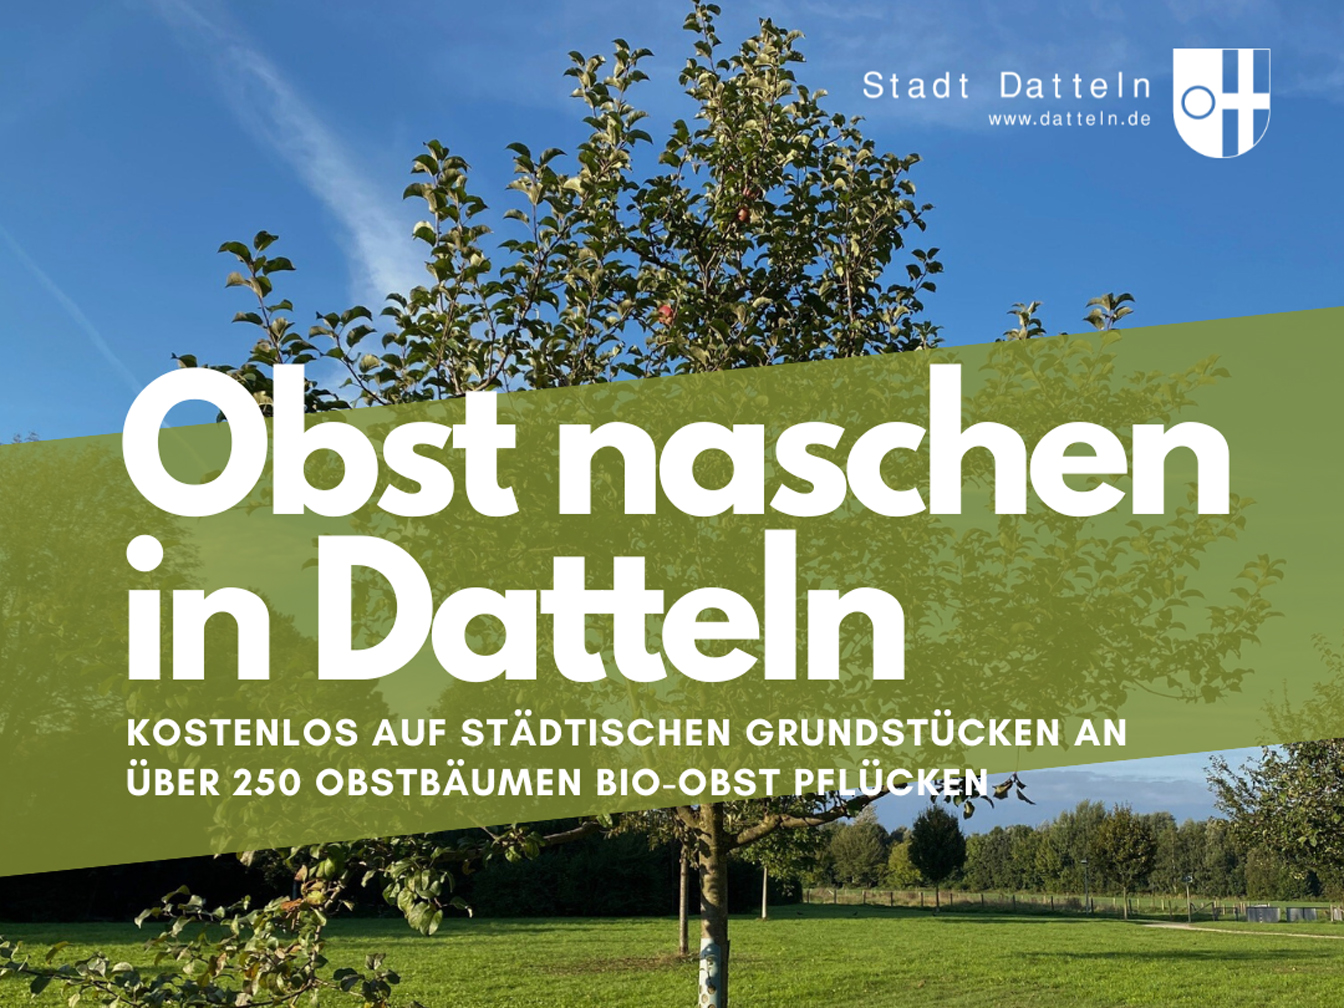 Obstbäume im Möllerskamp, außerdem der Text "Obst naschen in Datteln" und der Hinweis "kostenlos auf städtischen Grundstücken an über 250 Bäumen Bio-Obst pflücken"